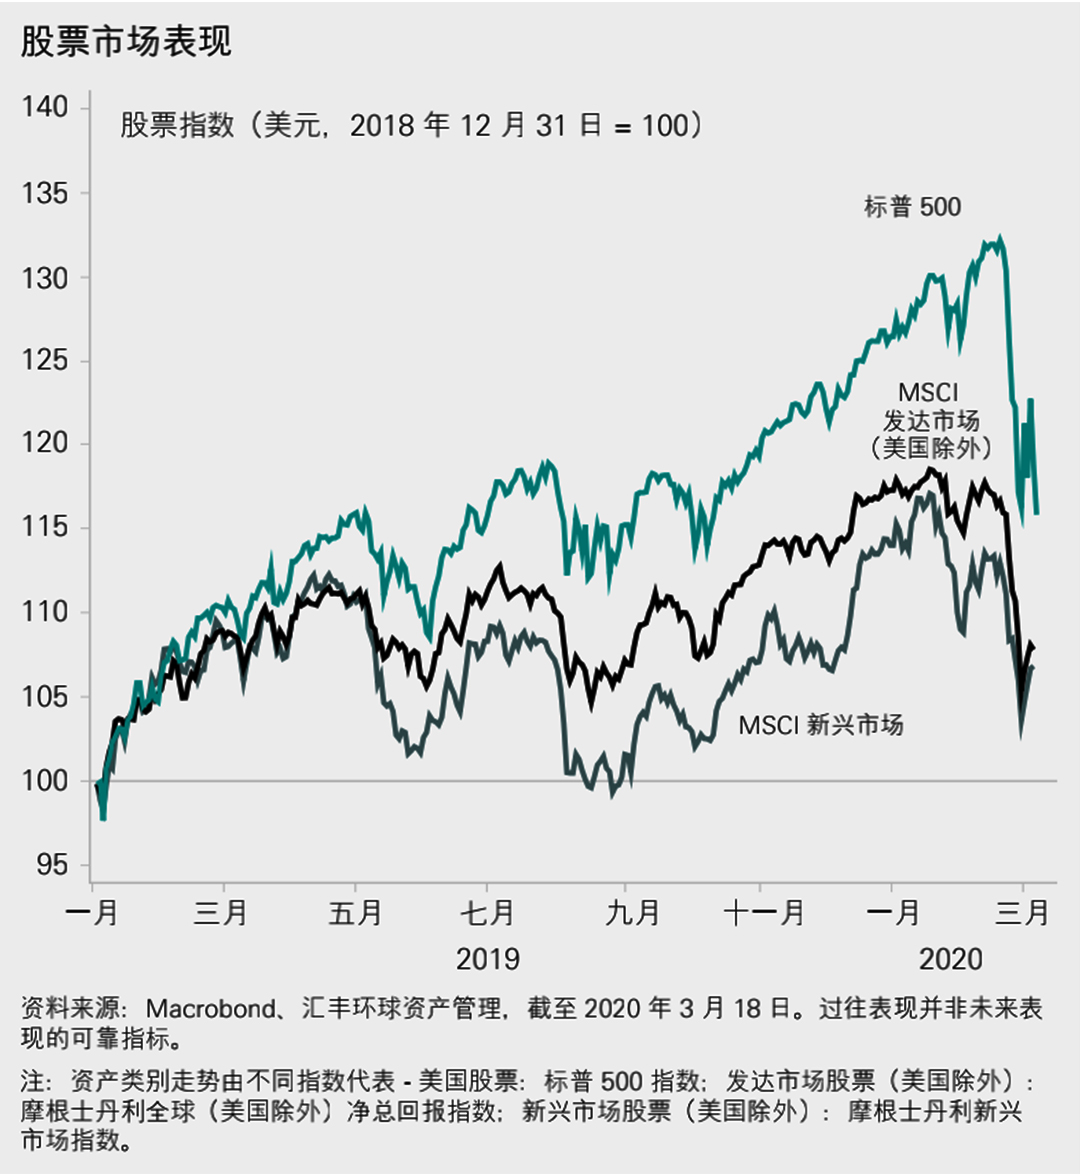 2019年1月至2020年3月股票市场表现；资料来源：Macrobond、汇丰环球资产管理、截至2020年3月18日。过往表现并非未来表现的可靠指标。注：资产类别走势由不同指数代表，美国股票：标普500指数：发达市场股票（美国除外）：摩根士丹利全球（美国除外）净总回报指数；新兴市场股票（美国除外）：摩根士丹利新兴市场指数。